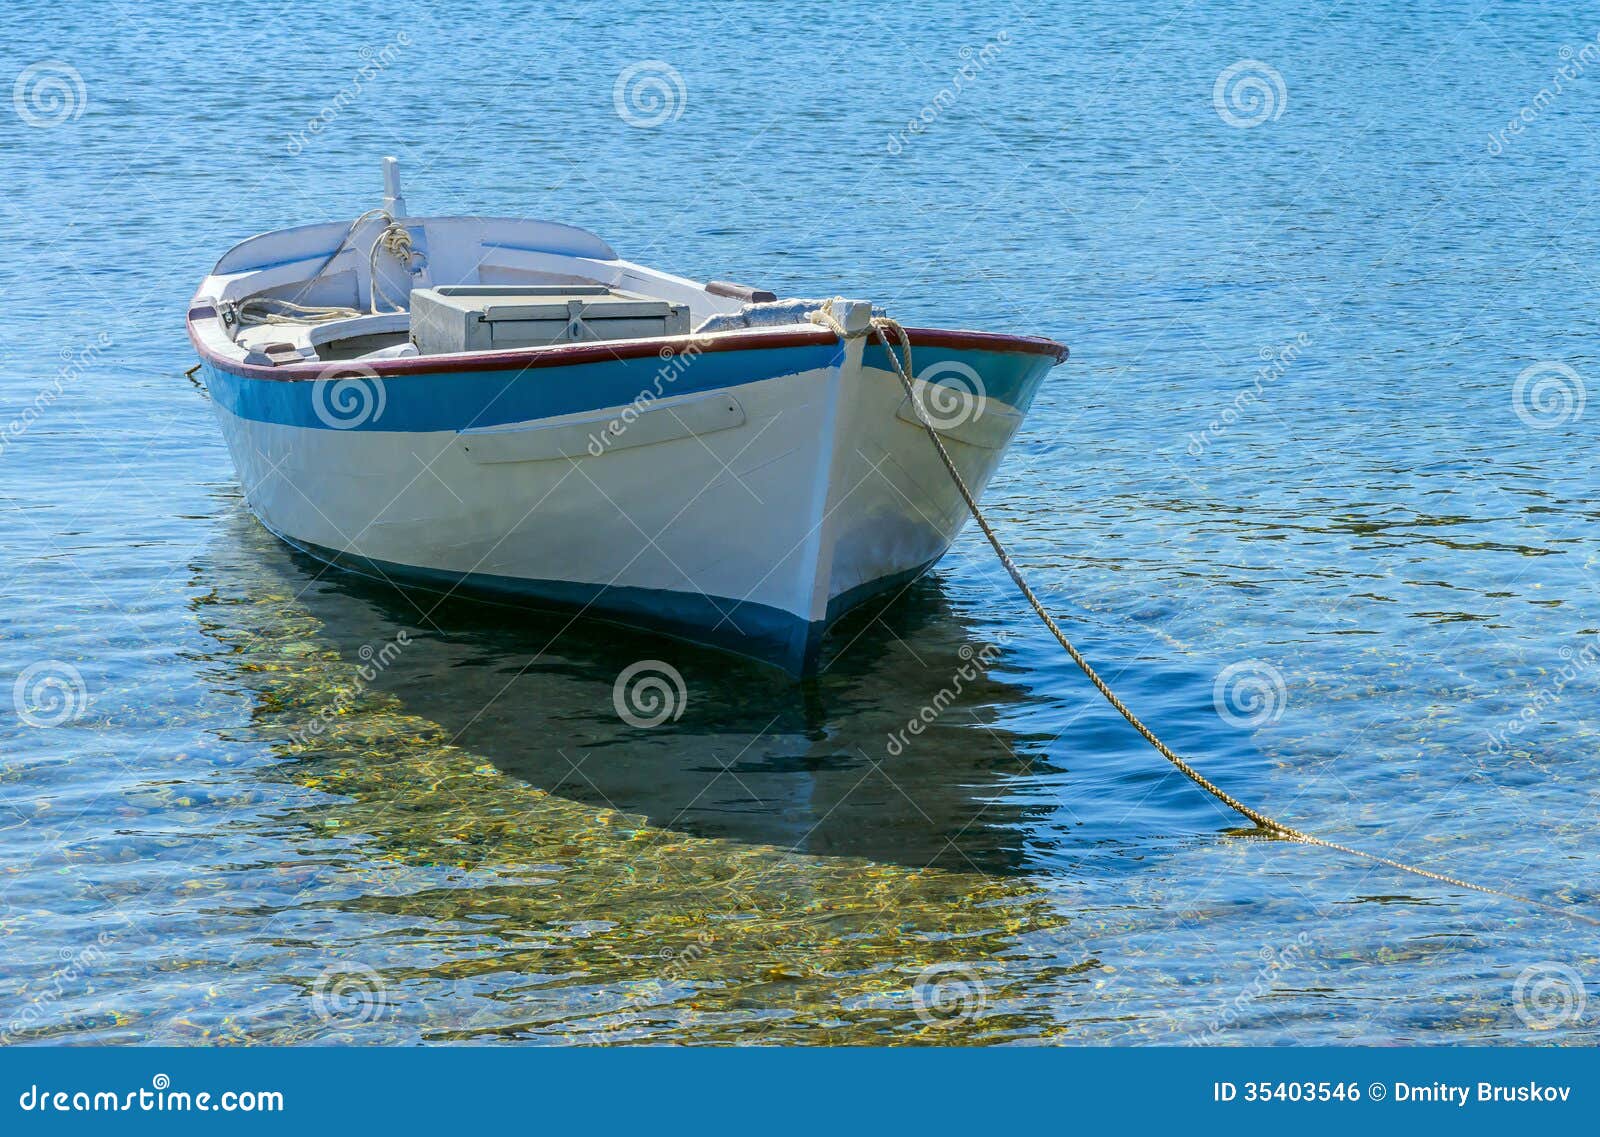 أهمية قماش مضيفة barca a remi in legno amazon - muradesignco.com